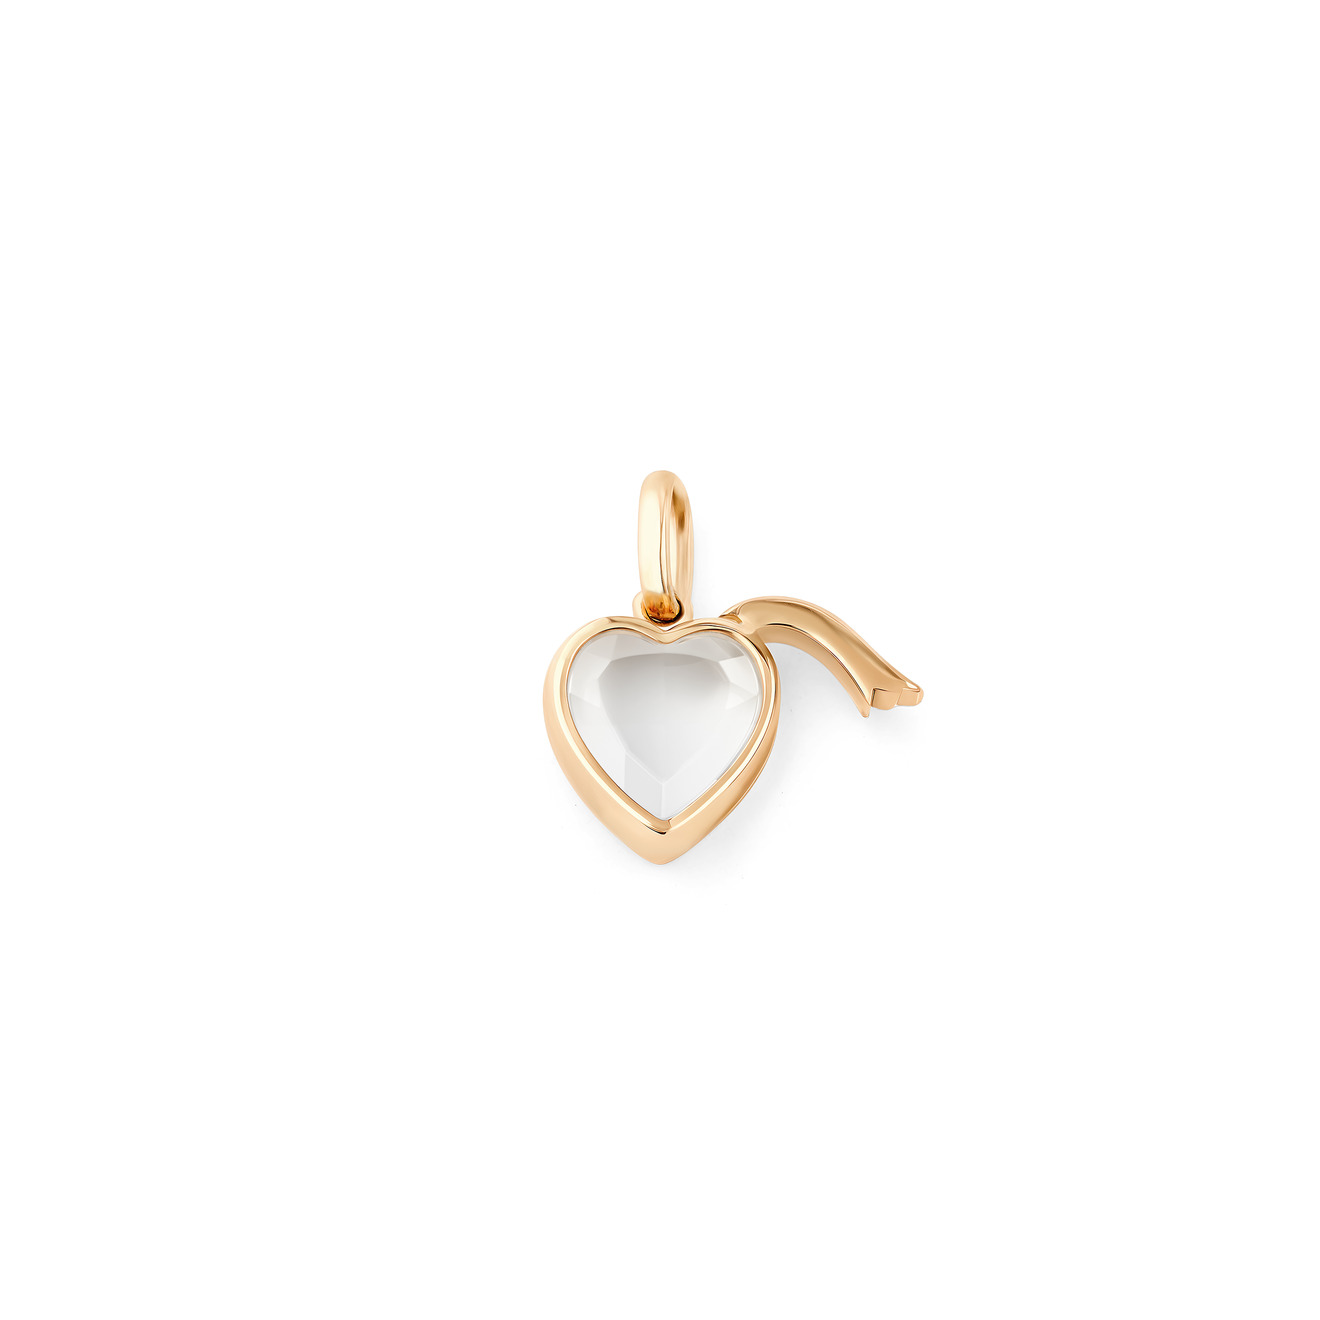 Loquet London Кулон-сердце Locket маленькое из золота loquet london кулон locket в виде сердца из белого золота